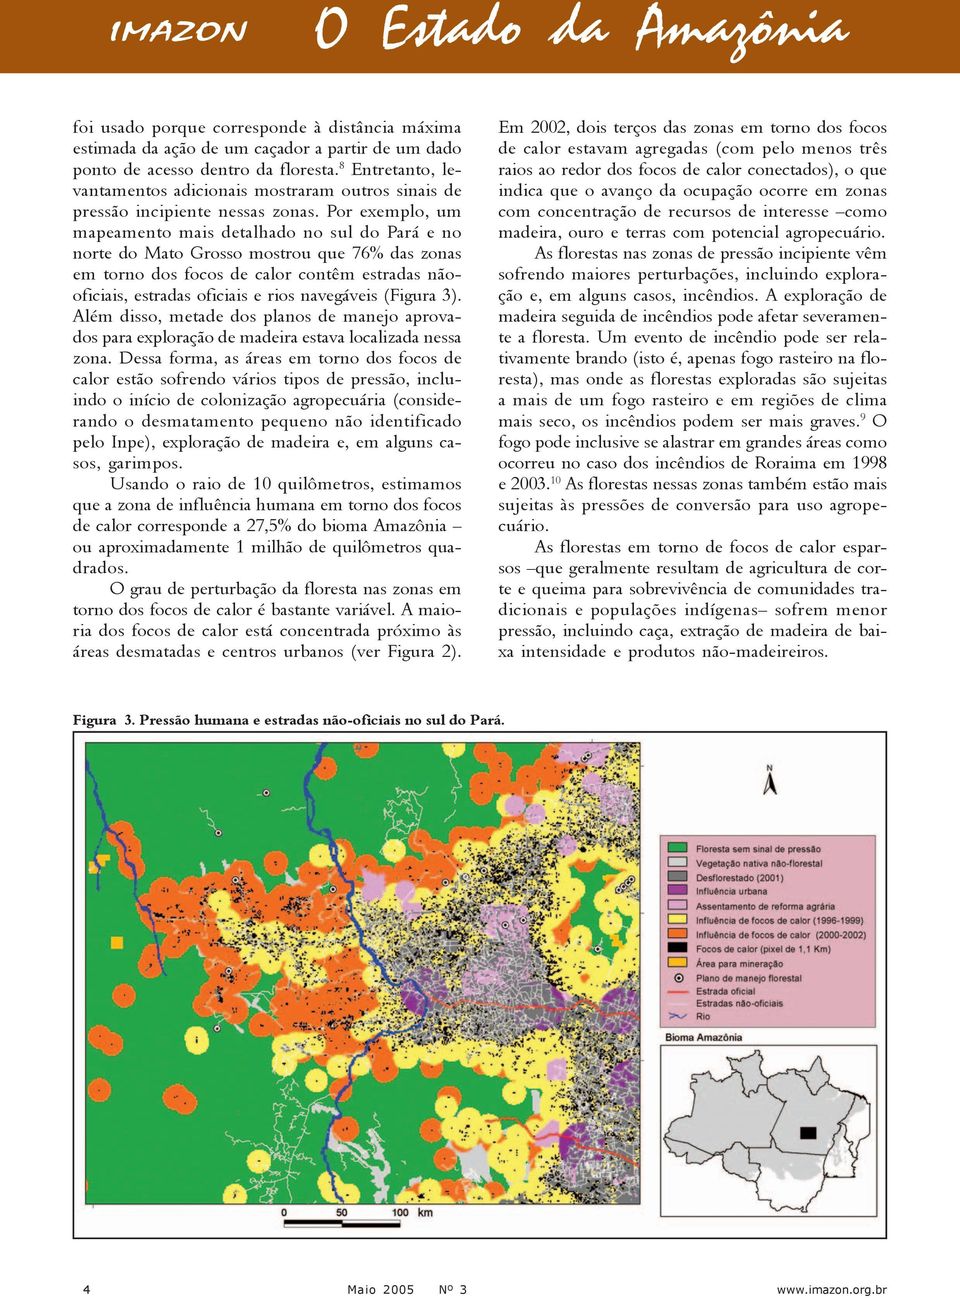 Por exemplo, um mapeamento mais detalhado no sul do Pará e no norte do Mato Grosso mostrou que 76% das zonas em torno dos focos de calor contêm estradas nãooficiais, estradas oficiais e rios